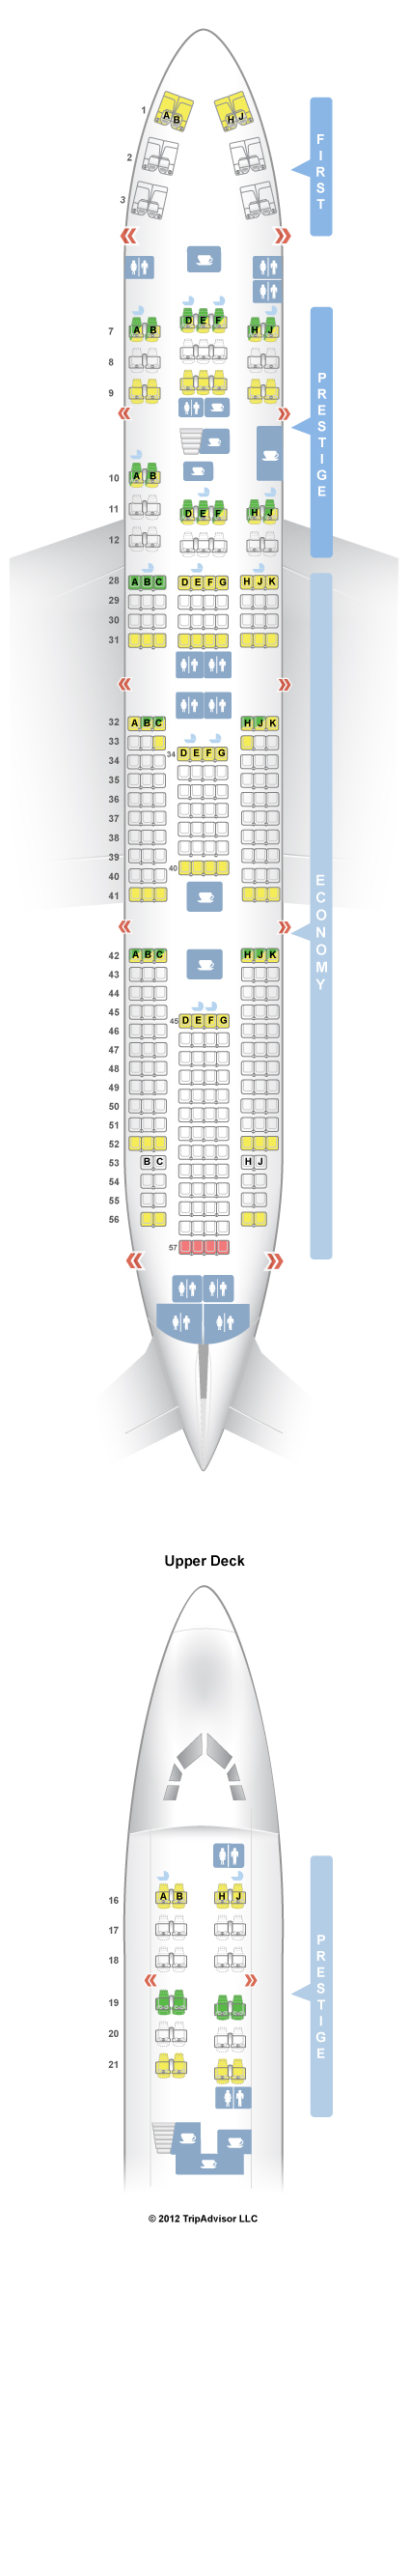 Airbus A380 Seating Chart Korean Air